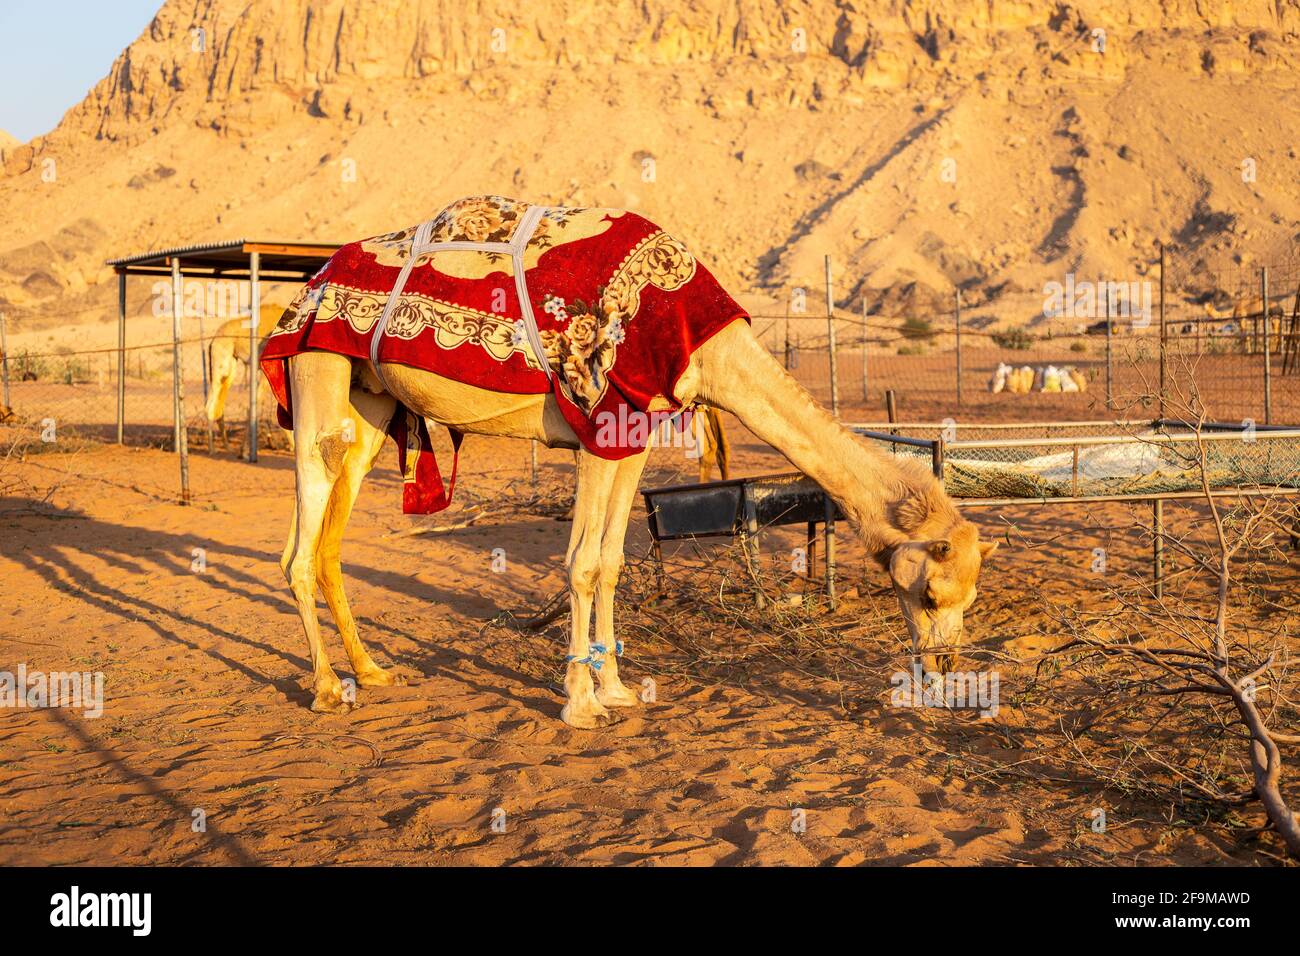 Chameau dromadaire (Camelus dromedarius) recouvert d'une couverture rouge, manger du feuillage sec sur une ferme à Sharjah, Émirats arabes Unis, avec des montagnes rocheuses dedans Banque D'Images